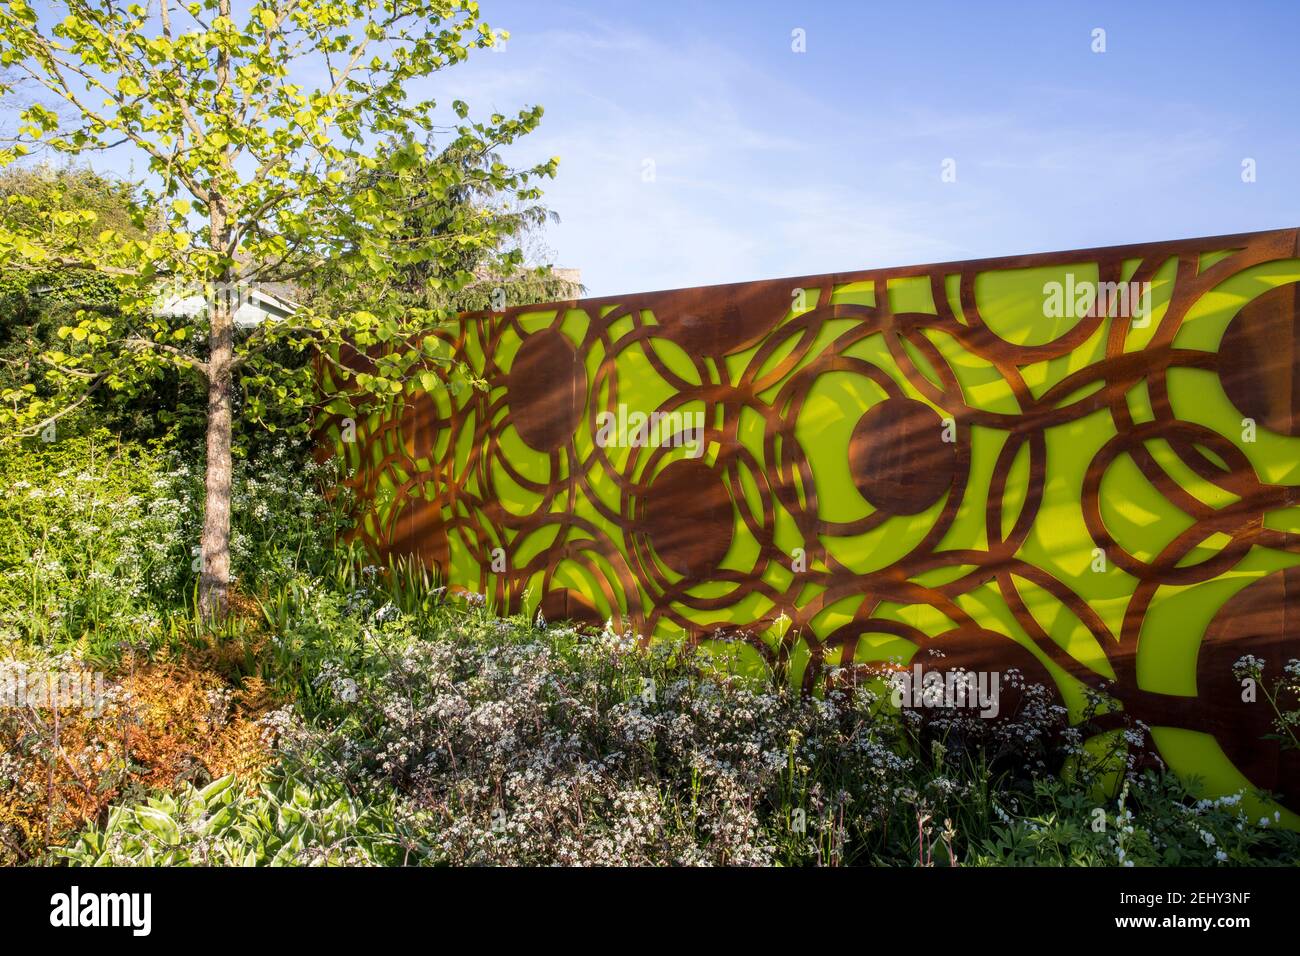 Ein moderner städtischer Garten Corten Stahl grünen Garten Zaun Platten - Frühling -Blumengrenze - blauer Himmel - Corylus colurna - ein türkischer Haselnussbaum -England Vereinigtes Königreich Stockfoto